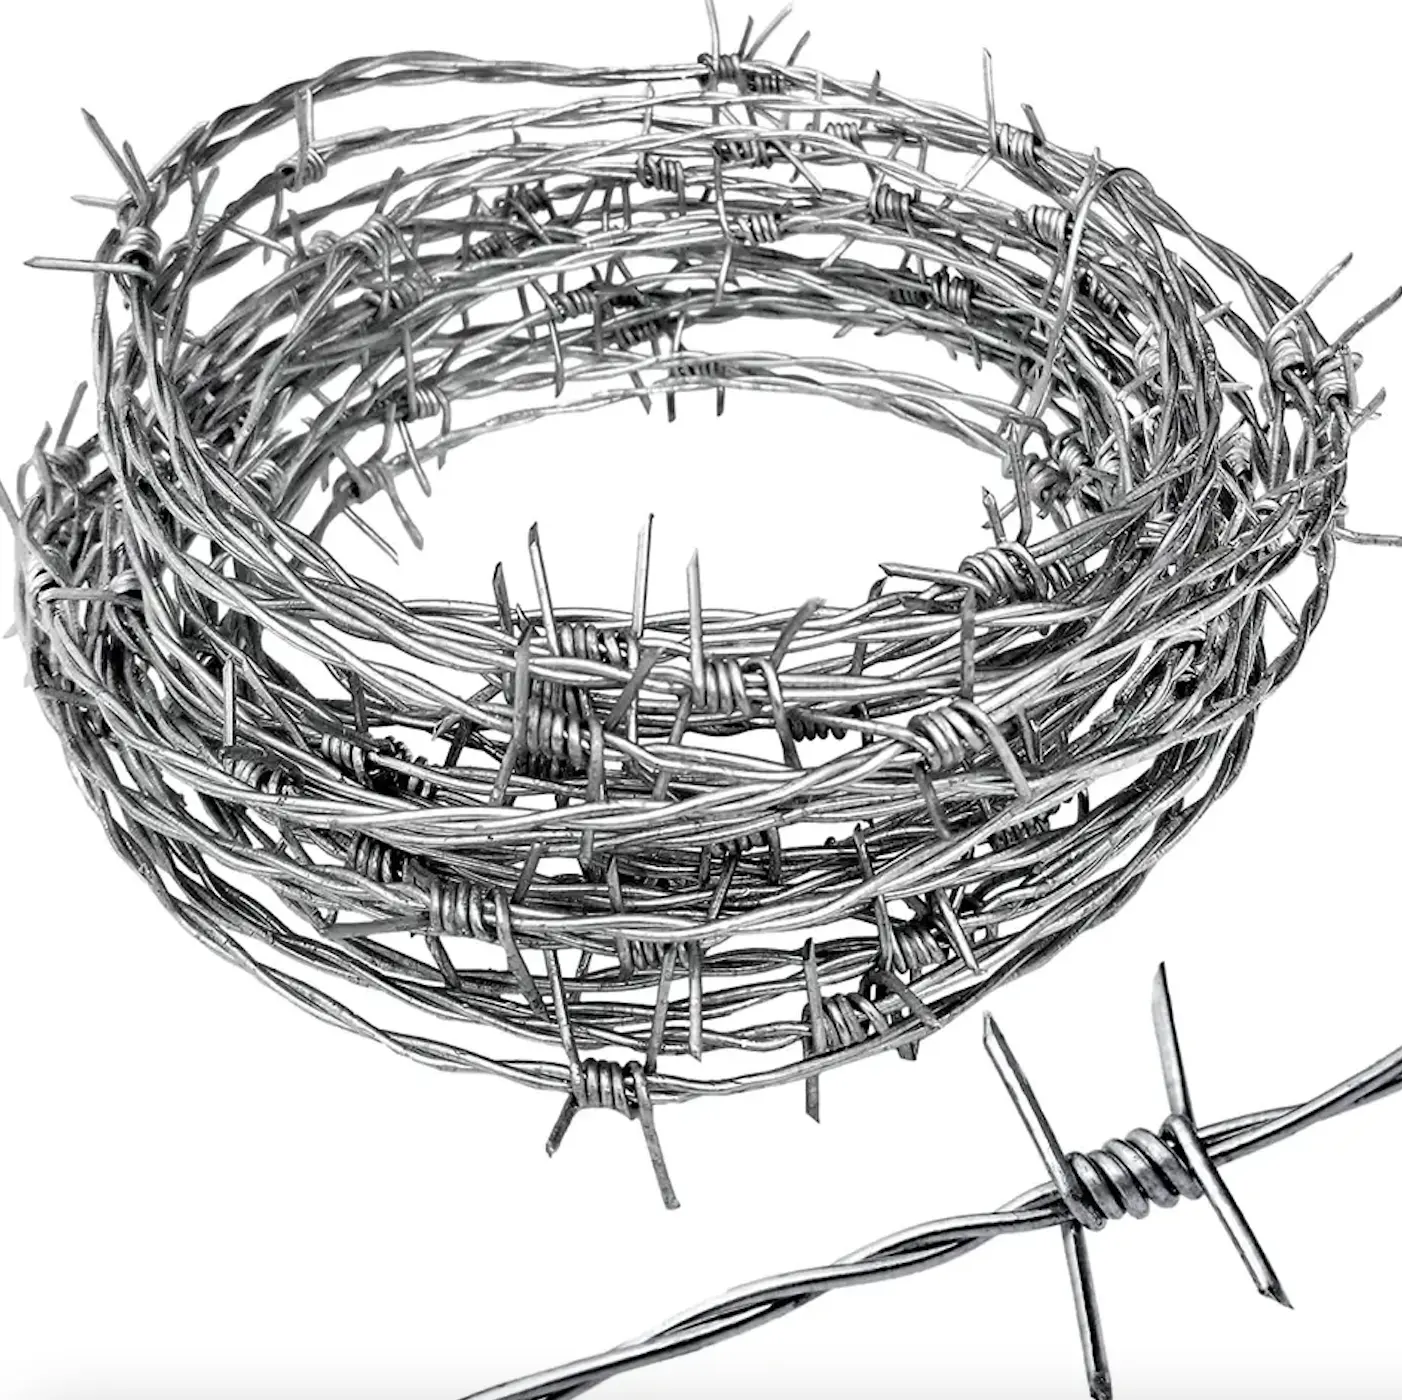 Yüksek kaliteli kullanılan zincir bağlantı tel örgü sıcak daldırma galvanizli pvc kaplama zincir bağlantı çit